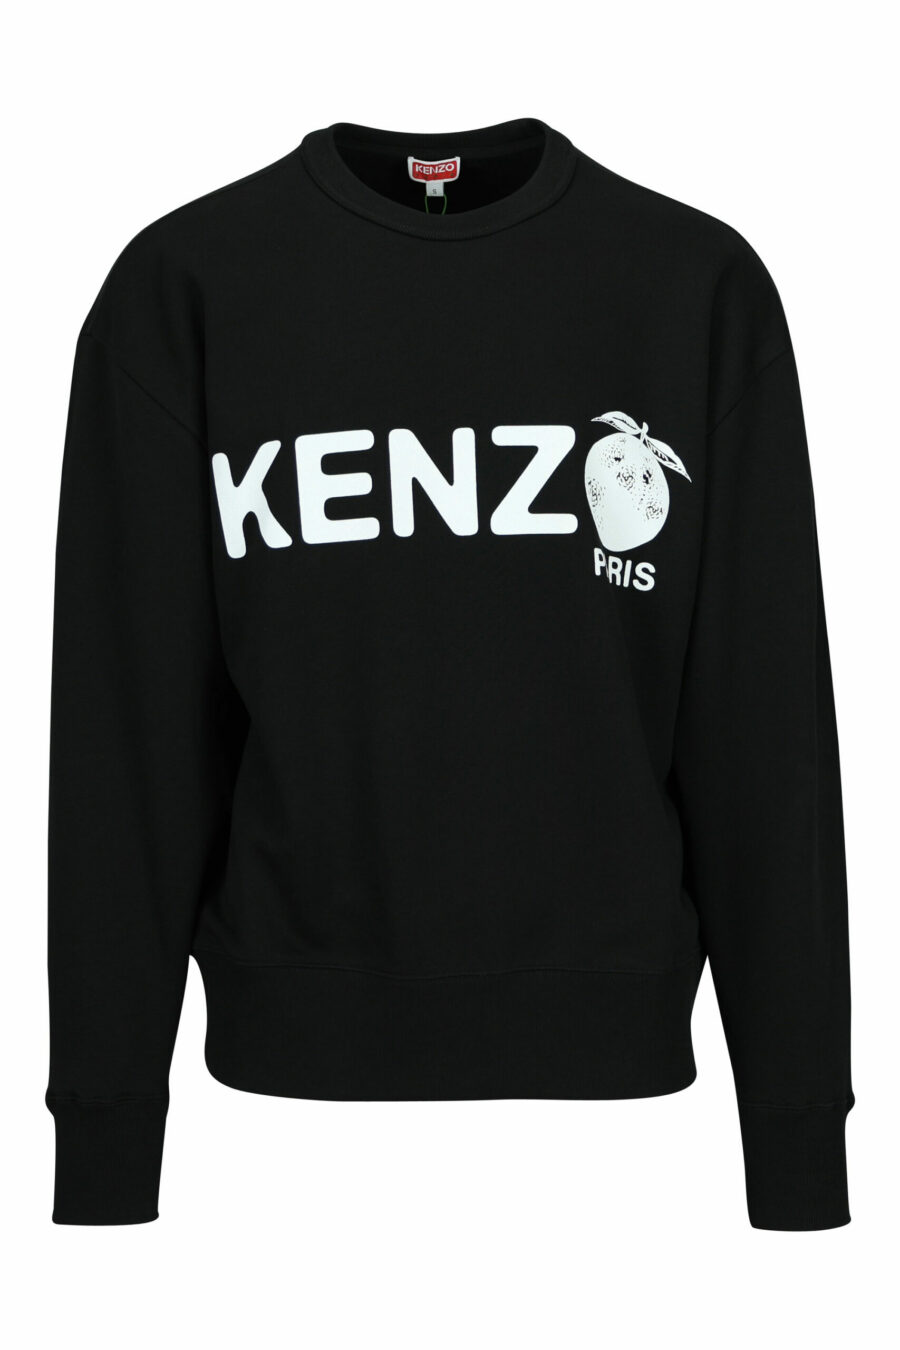 Sweatshirt noir avec maxilogo "kenzo orange" - 3612230622074 en écailles